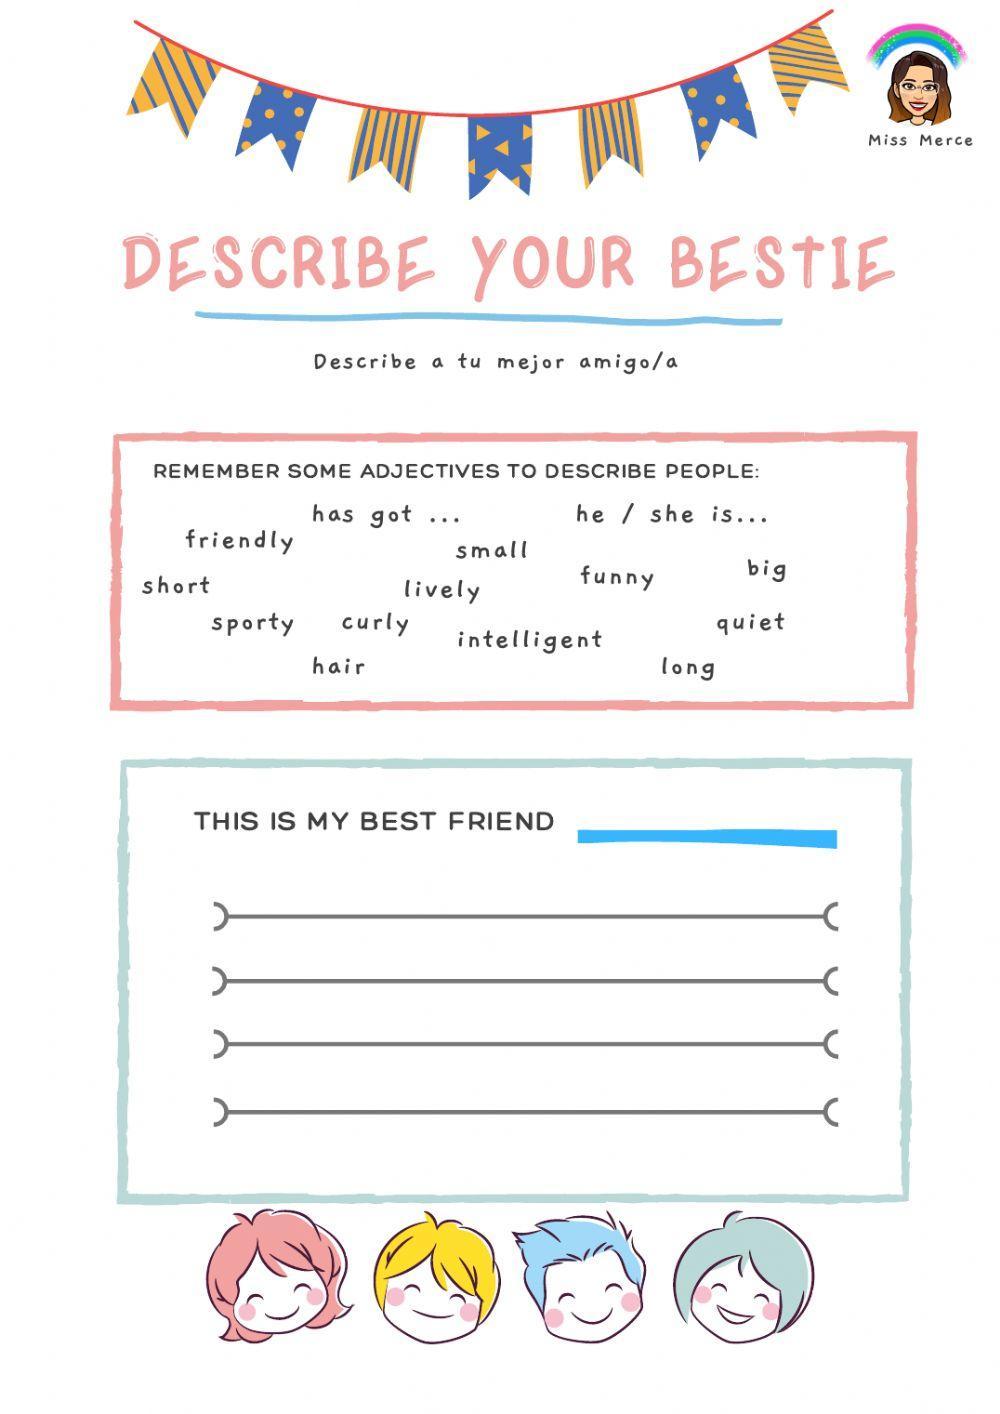 Describe your bestie